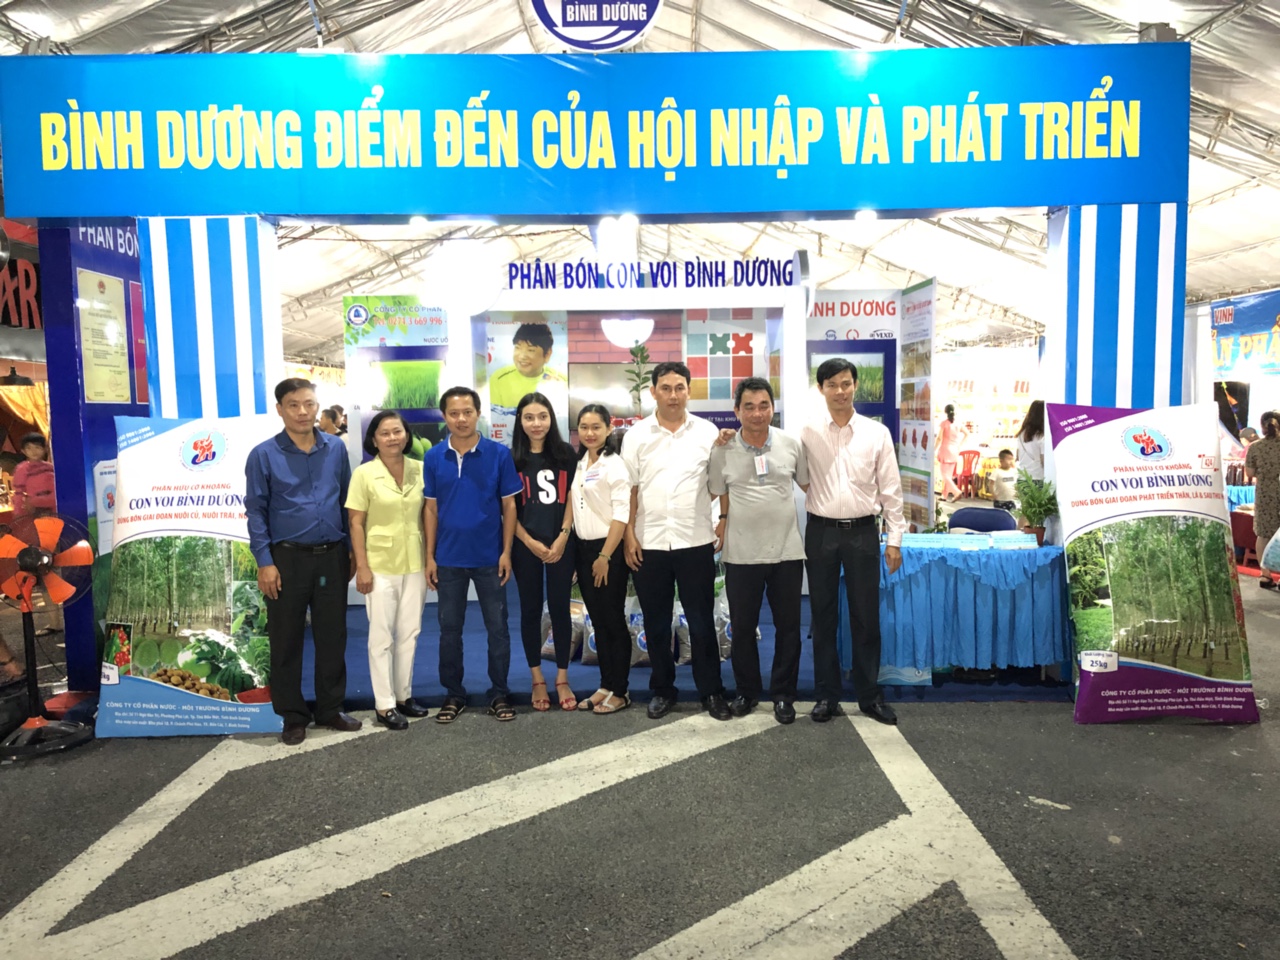 Bình Dương tham gia Hội chợ - Festival nông nghiệp tỉnh Vĩnh Long 2018